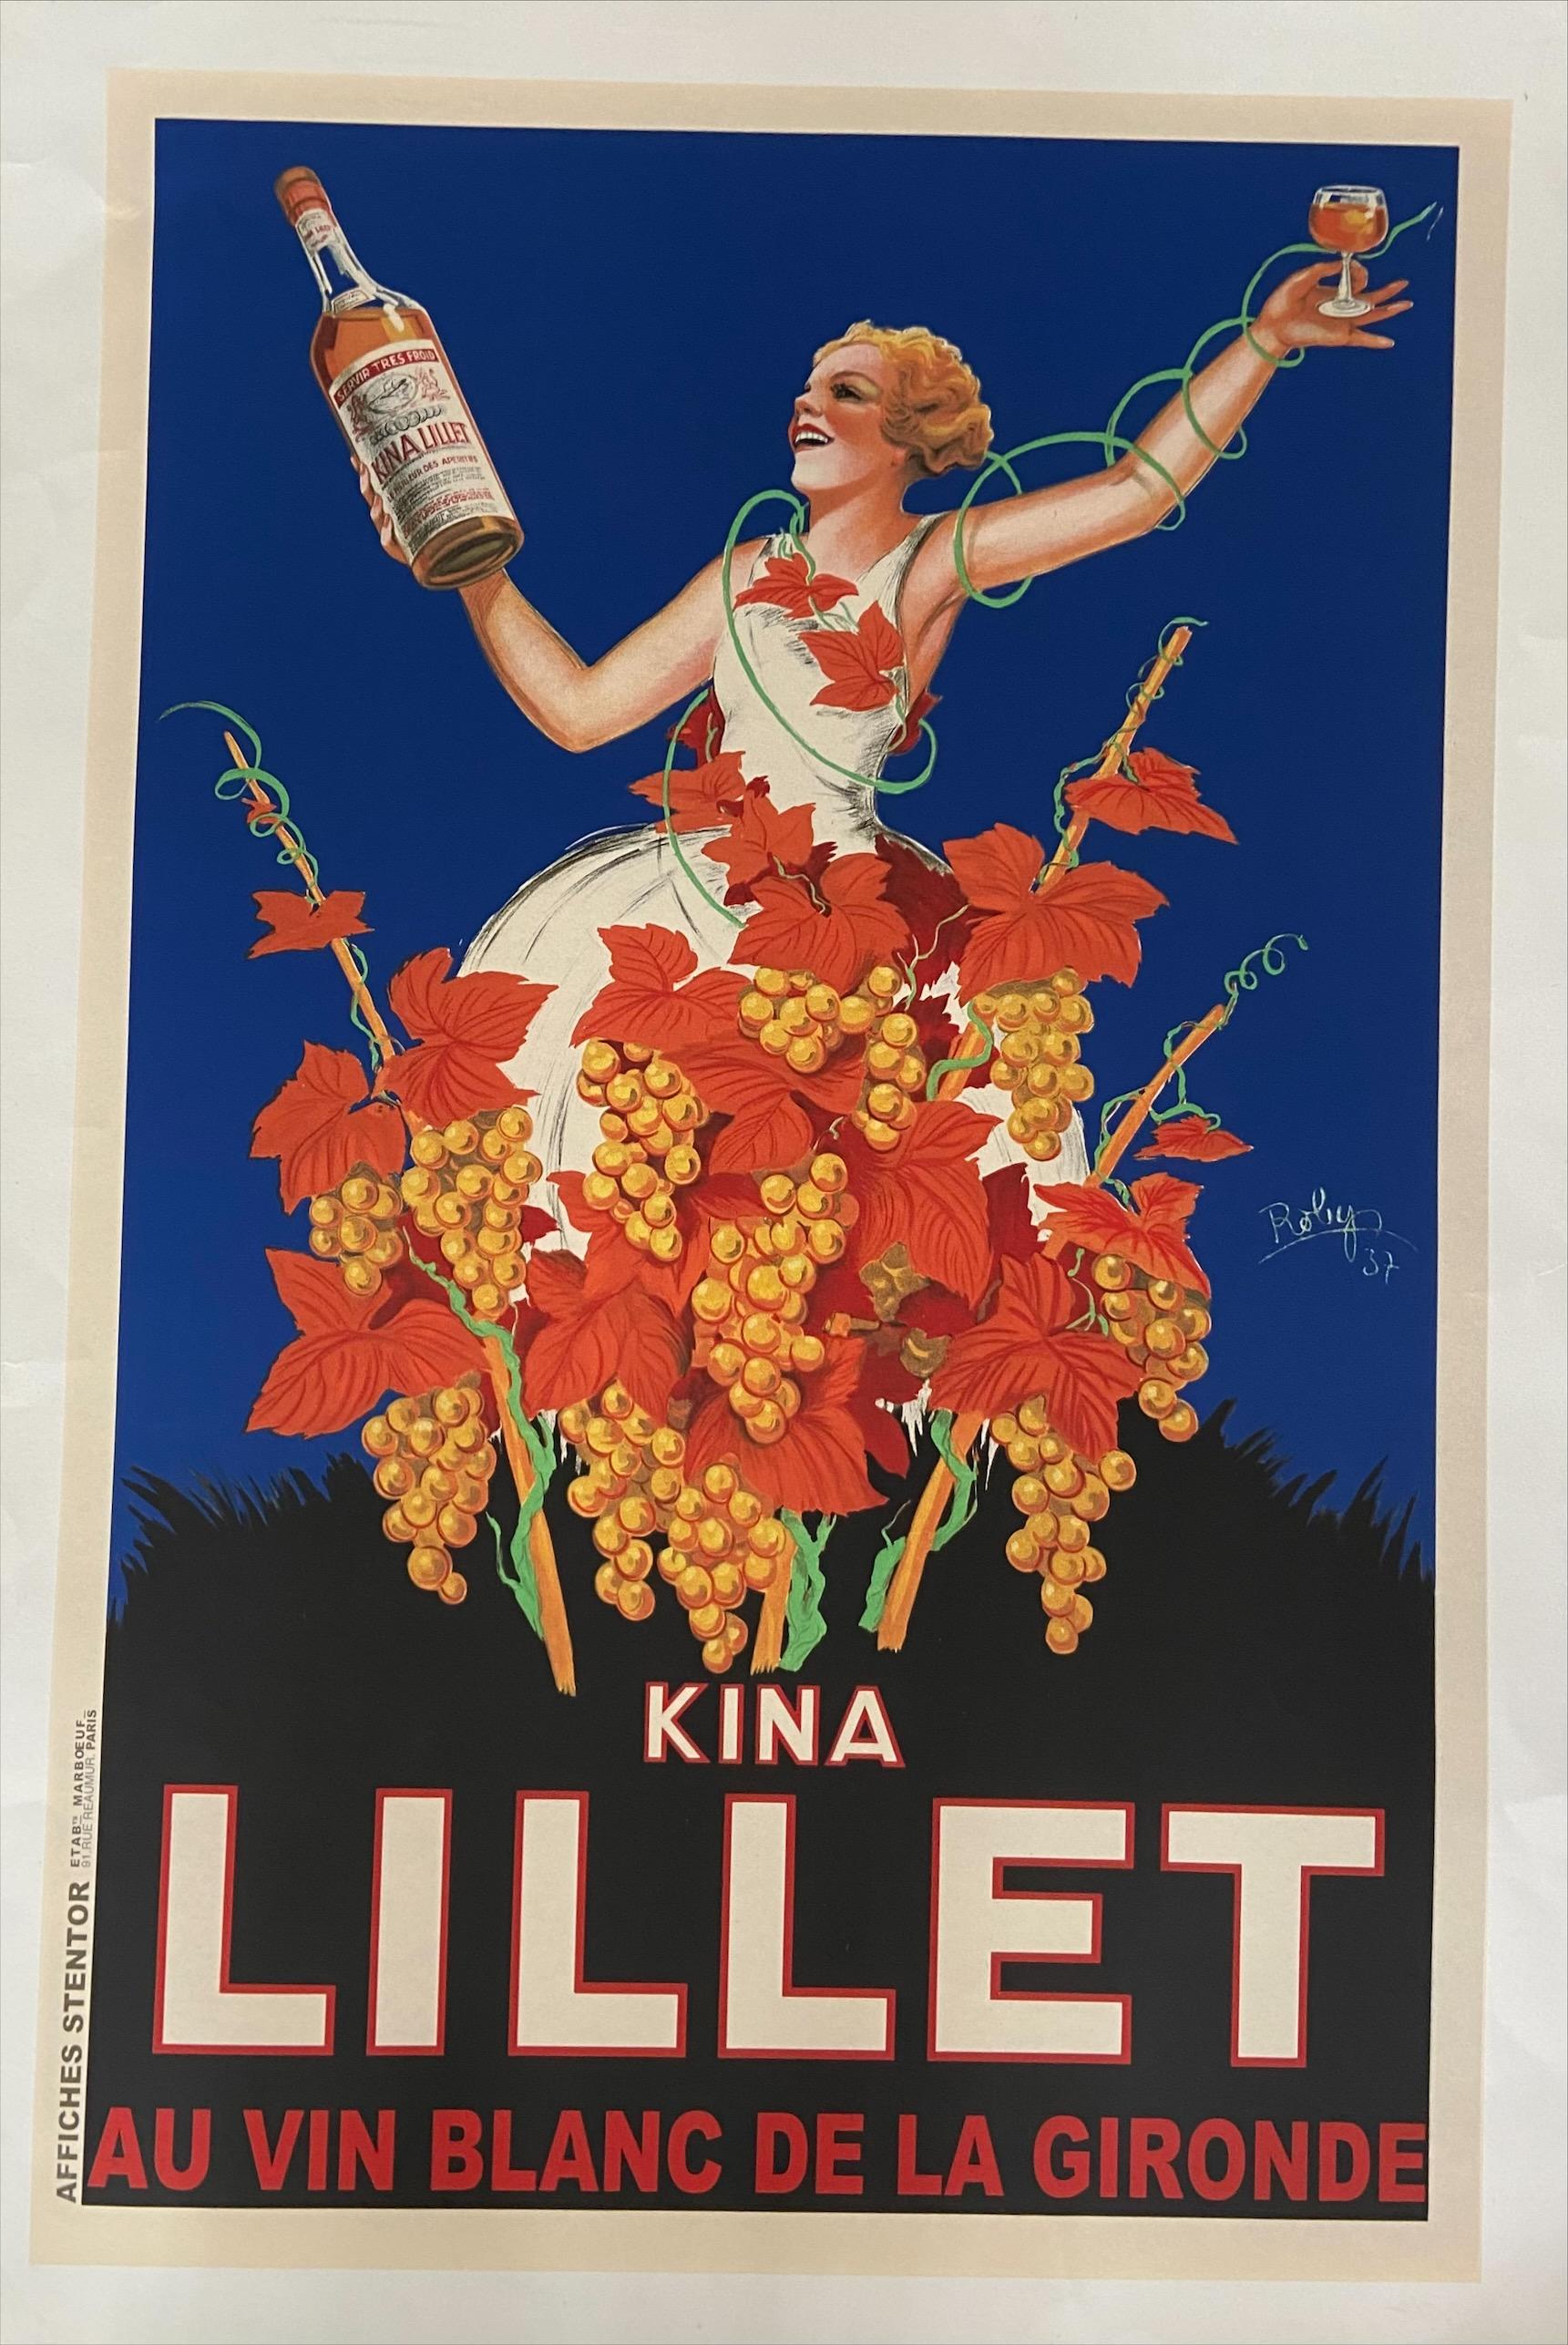 Affiche Kina Lillet - Robys (Robert Wolff)
Lithographie montée sur toile
1937
Impression Stentor
130x197cm
Signé et daté
En très bon état.